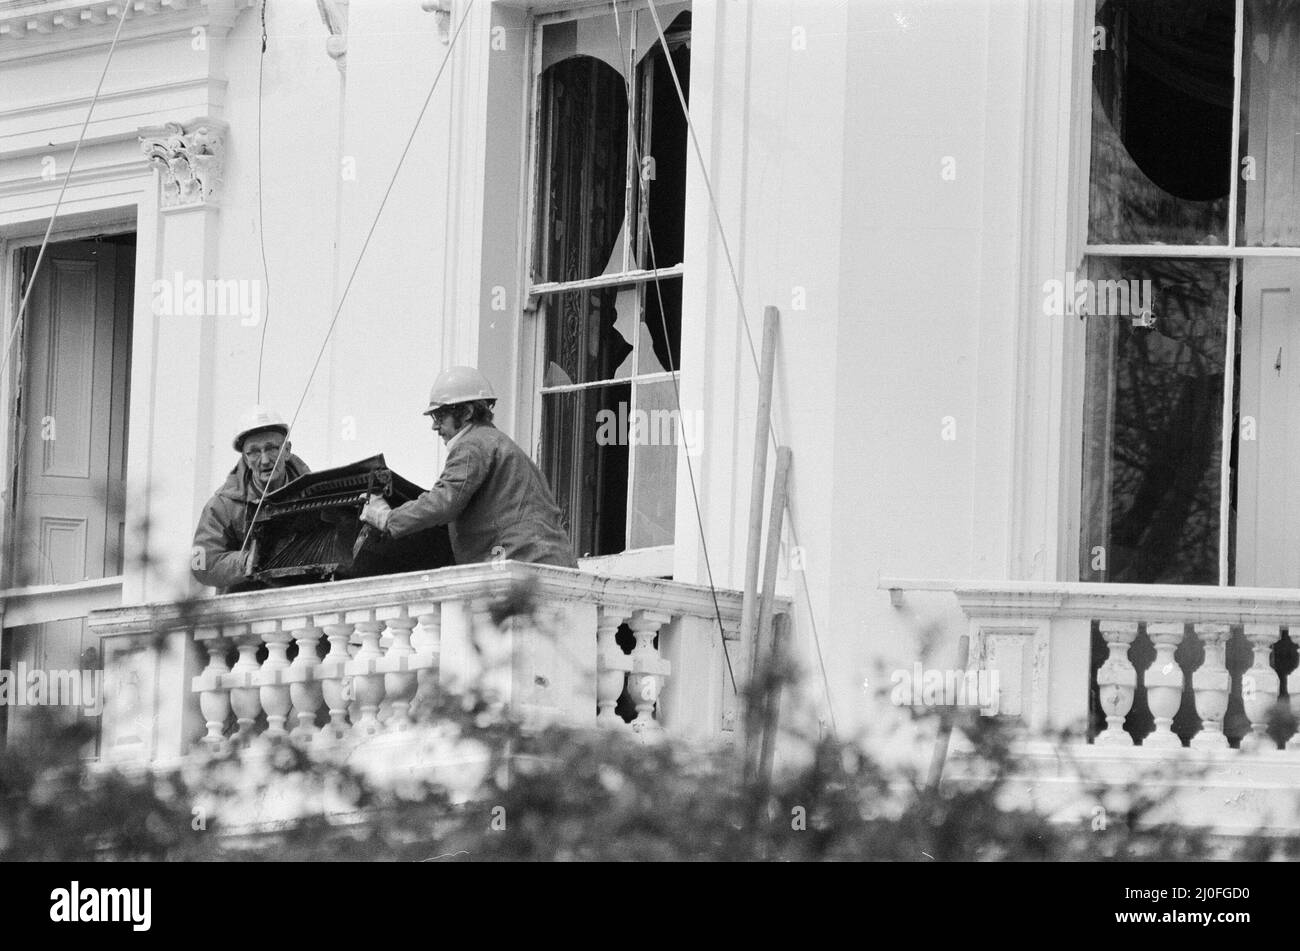 Die iranische Botschaft belagert in London, wo sechs bewaffnete Männer der iranischen extremistischen Gruppe „Demokratische Revolutionsbewegung zur Befreiung Arabistans“ das Gebäude stürmten und 26 Geiseln nahmen, bevor die SAS die Botschaft zurückeroberten und die Geiseln befreiten. Workemn beginnt, das beschädigte Botschaftsgebäude aufzuräumen, zwei Tage nachdem die SAS Gewitter durch das Fenster warf, um die Belagerung zu beenden. 7. Mai 1980. Stockfoto